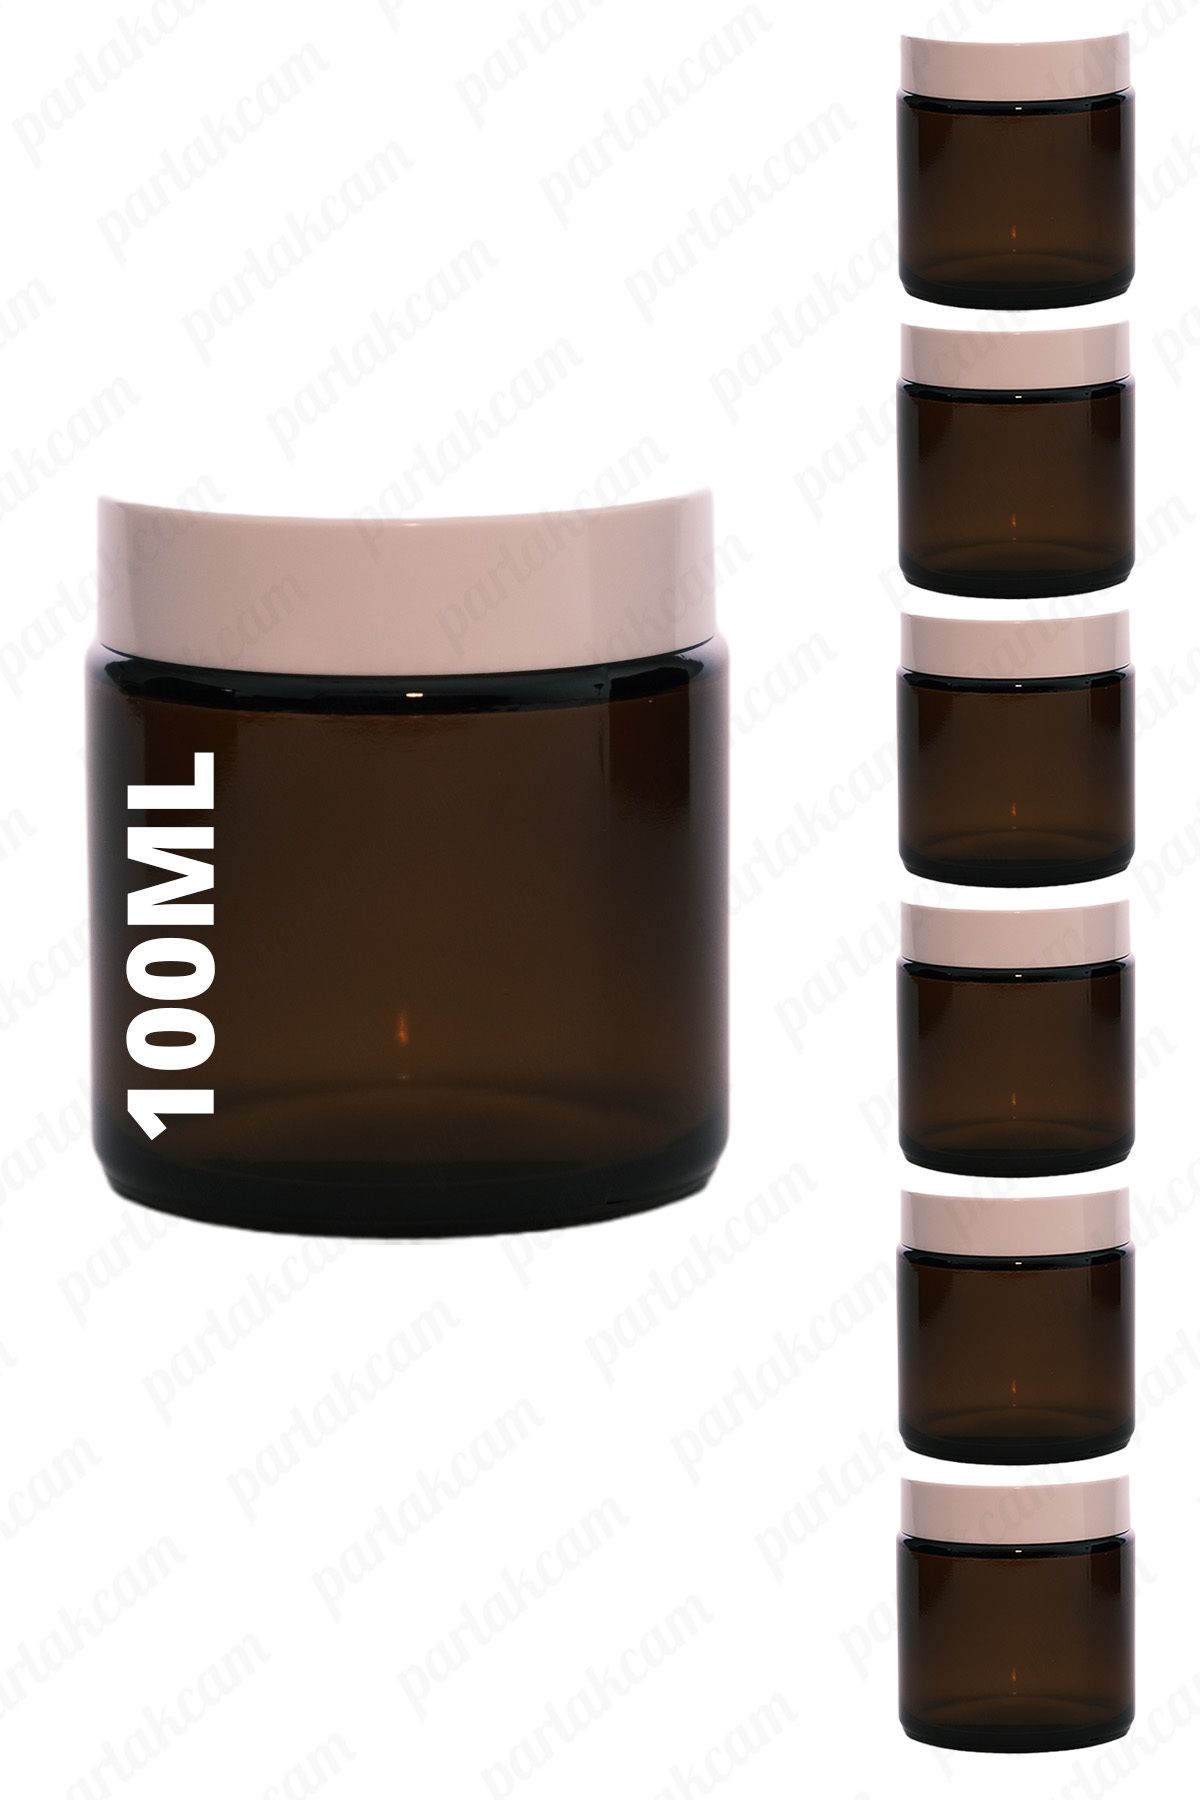 parlakcam 100ml amber krem kavanozu cam krem kutusu beyaz renkli koruma kapaklı 100cc cam kavanoz (6 adet)